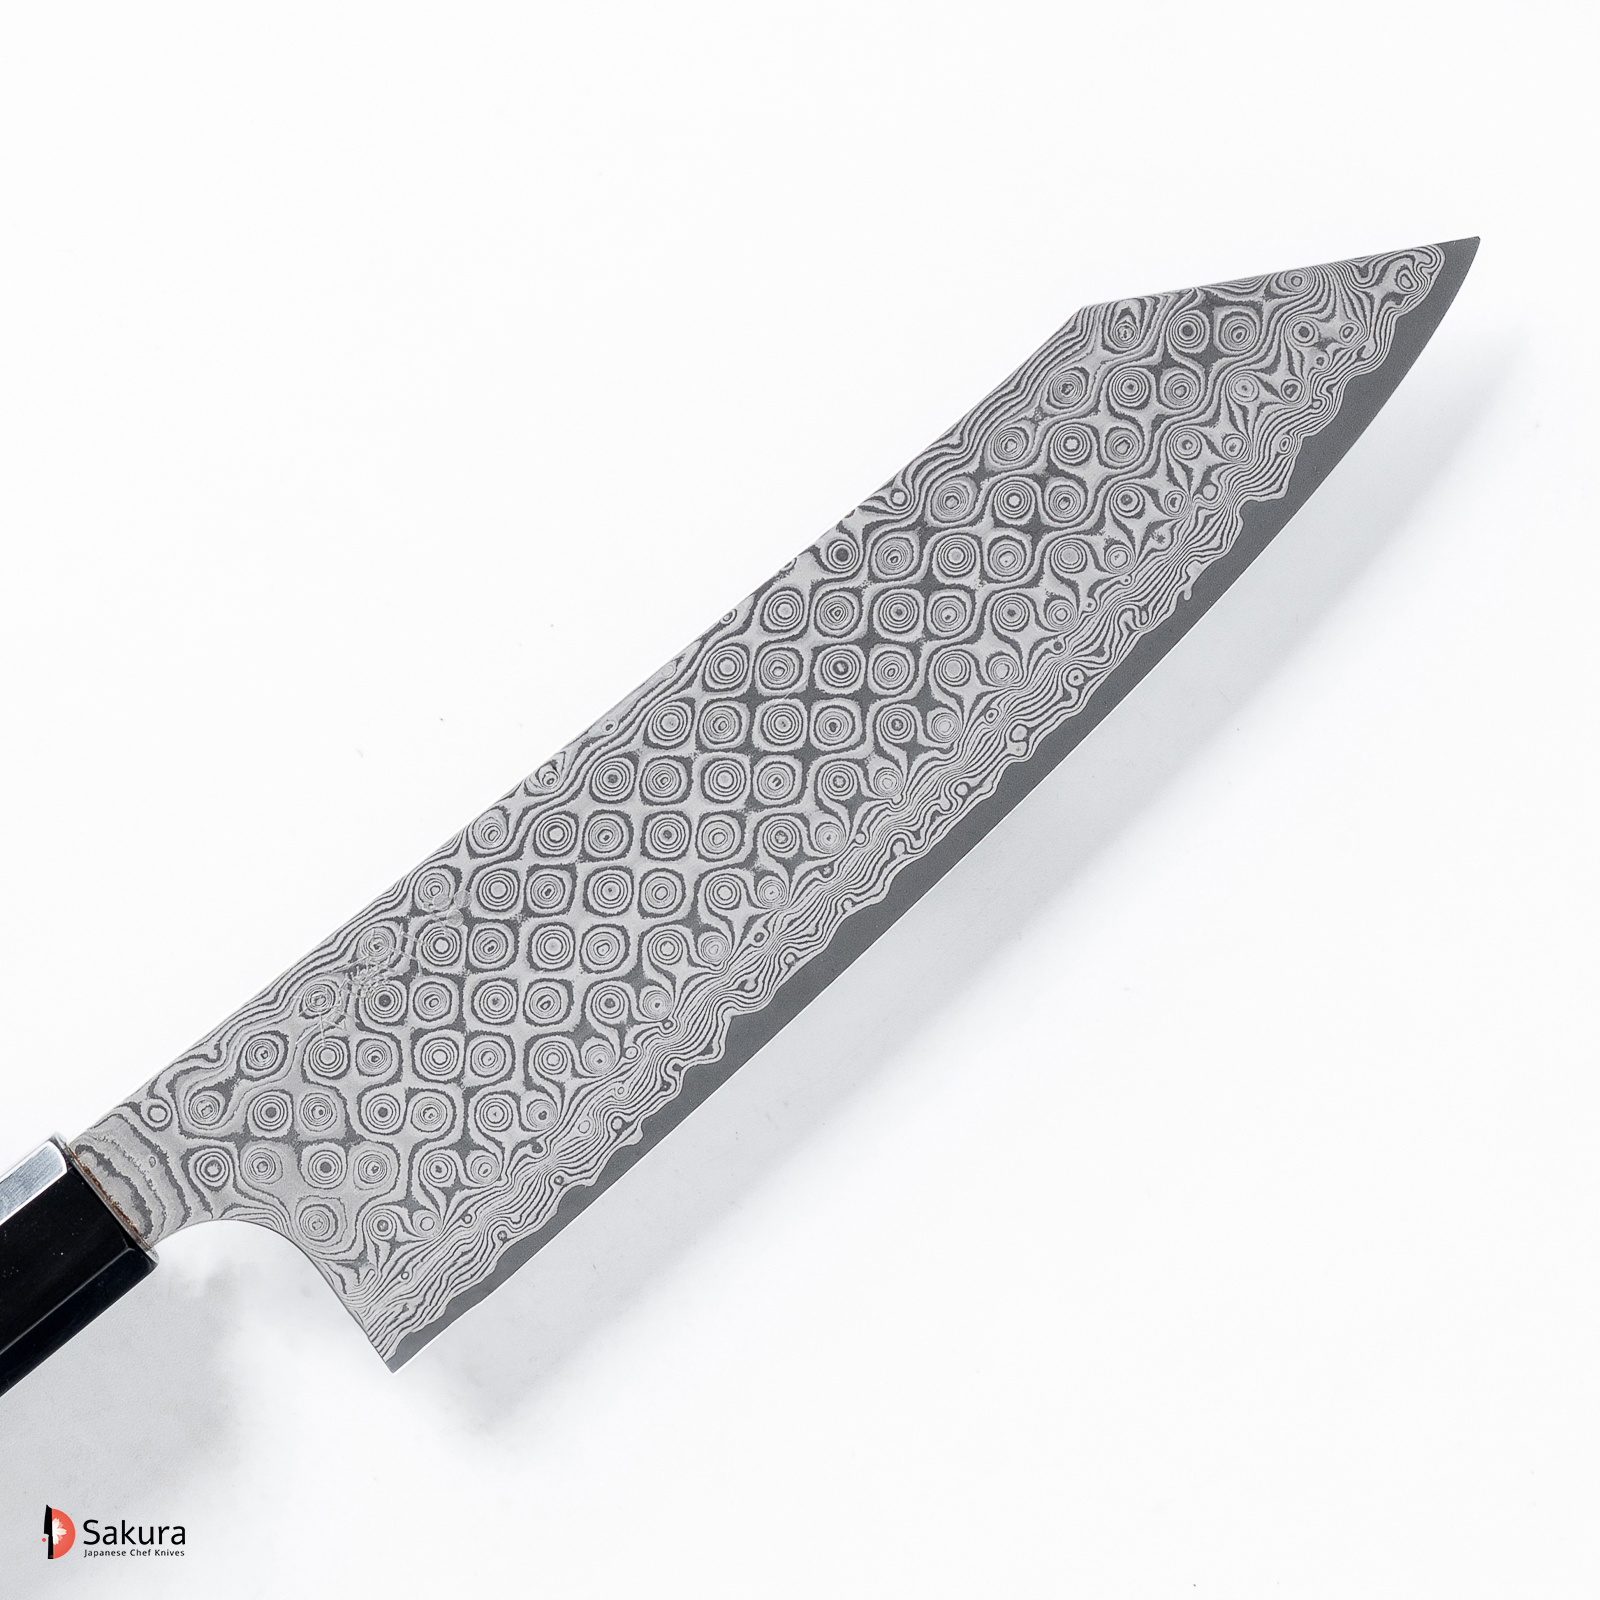 סכין שף רב-תכליתית קִּירִיצוּקֶה גִּיוּטוֹ 210מ״מ פלדת R2/SG2 גימור דמשק שחורה Kurosome בנויה 48 שכבות ניקל ונחושת ניגארה יפן [SKNIGASG2DAMKGYU21016]